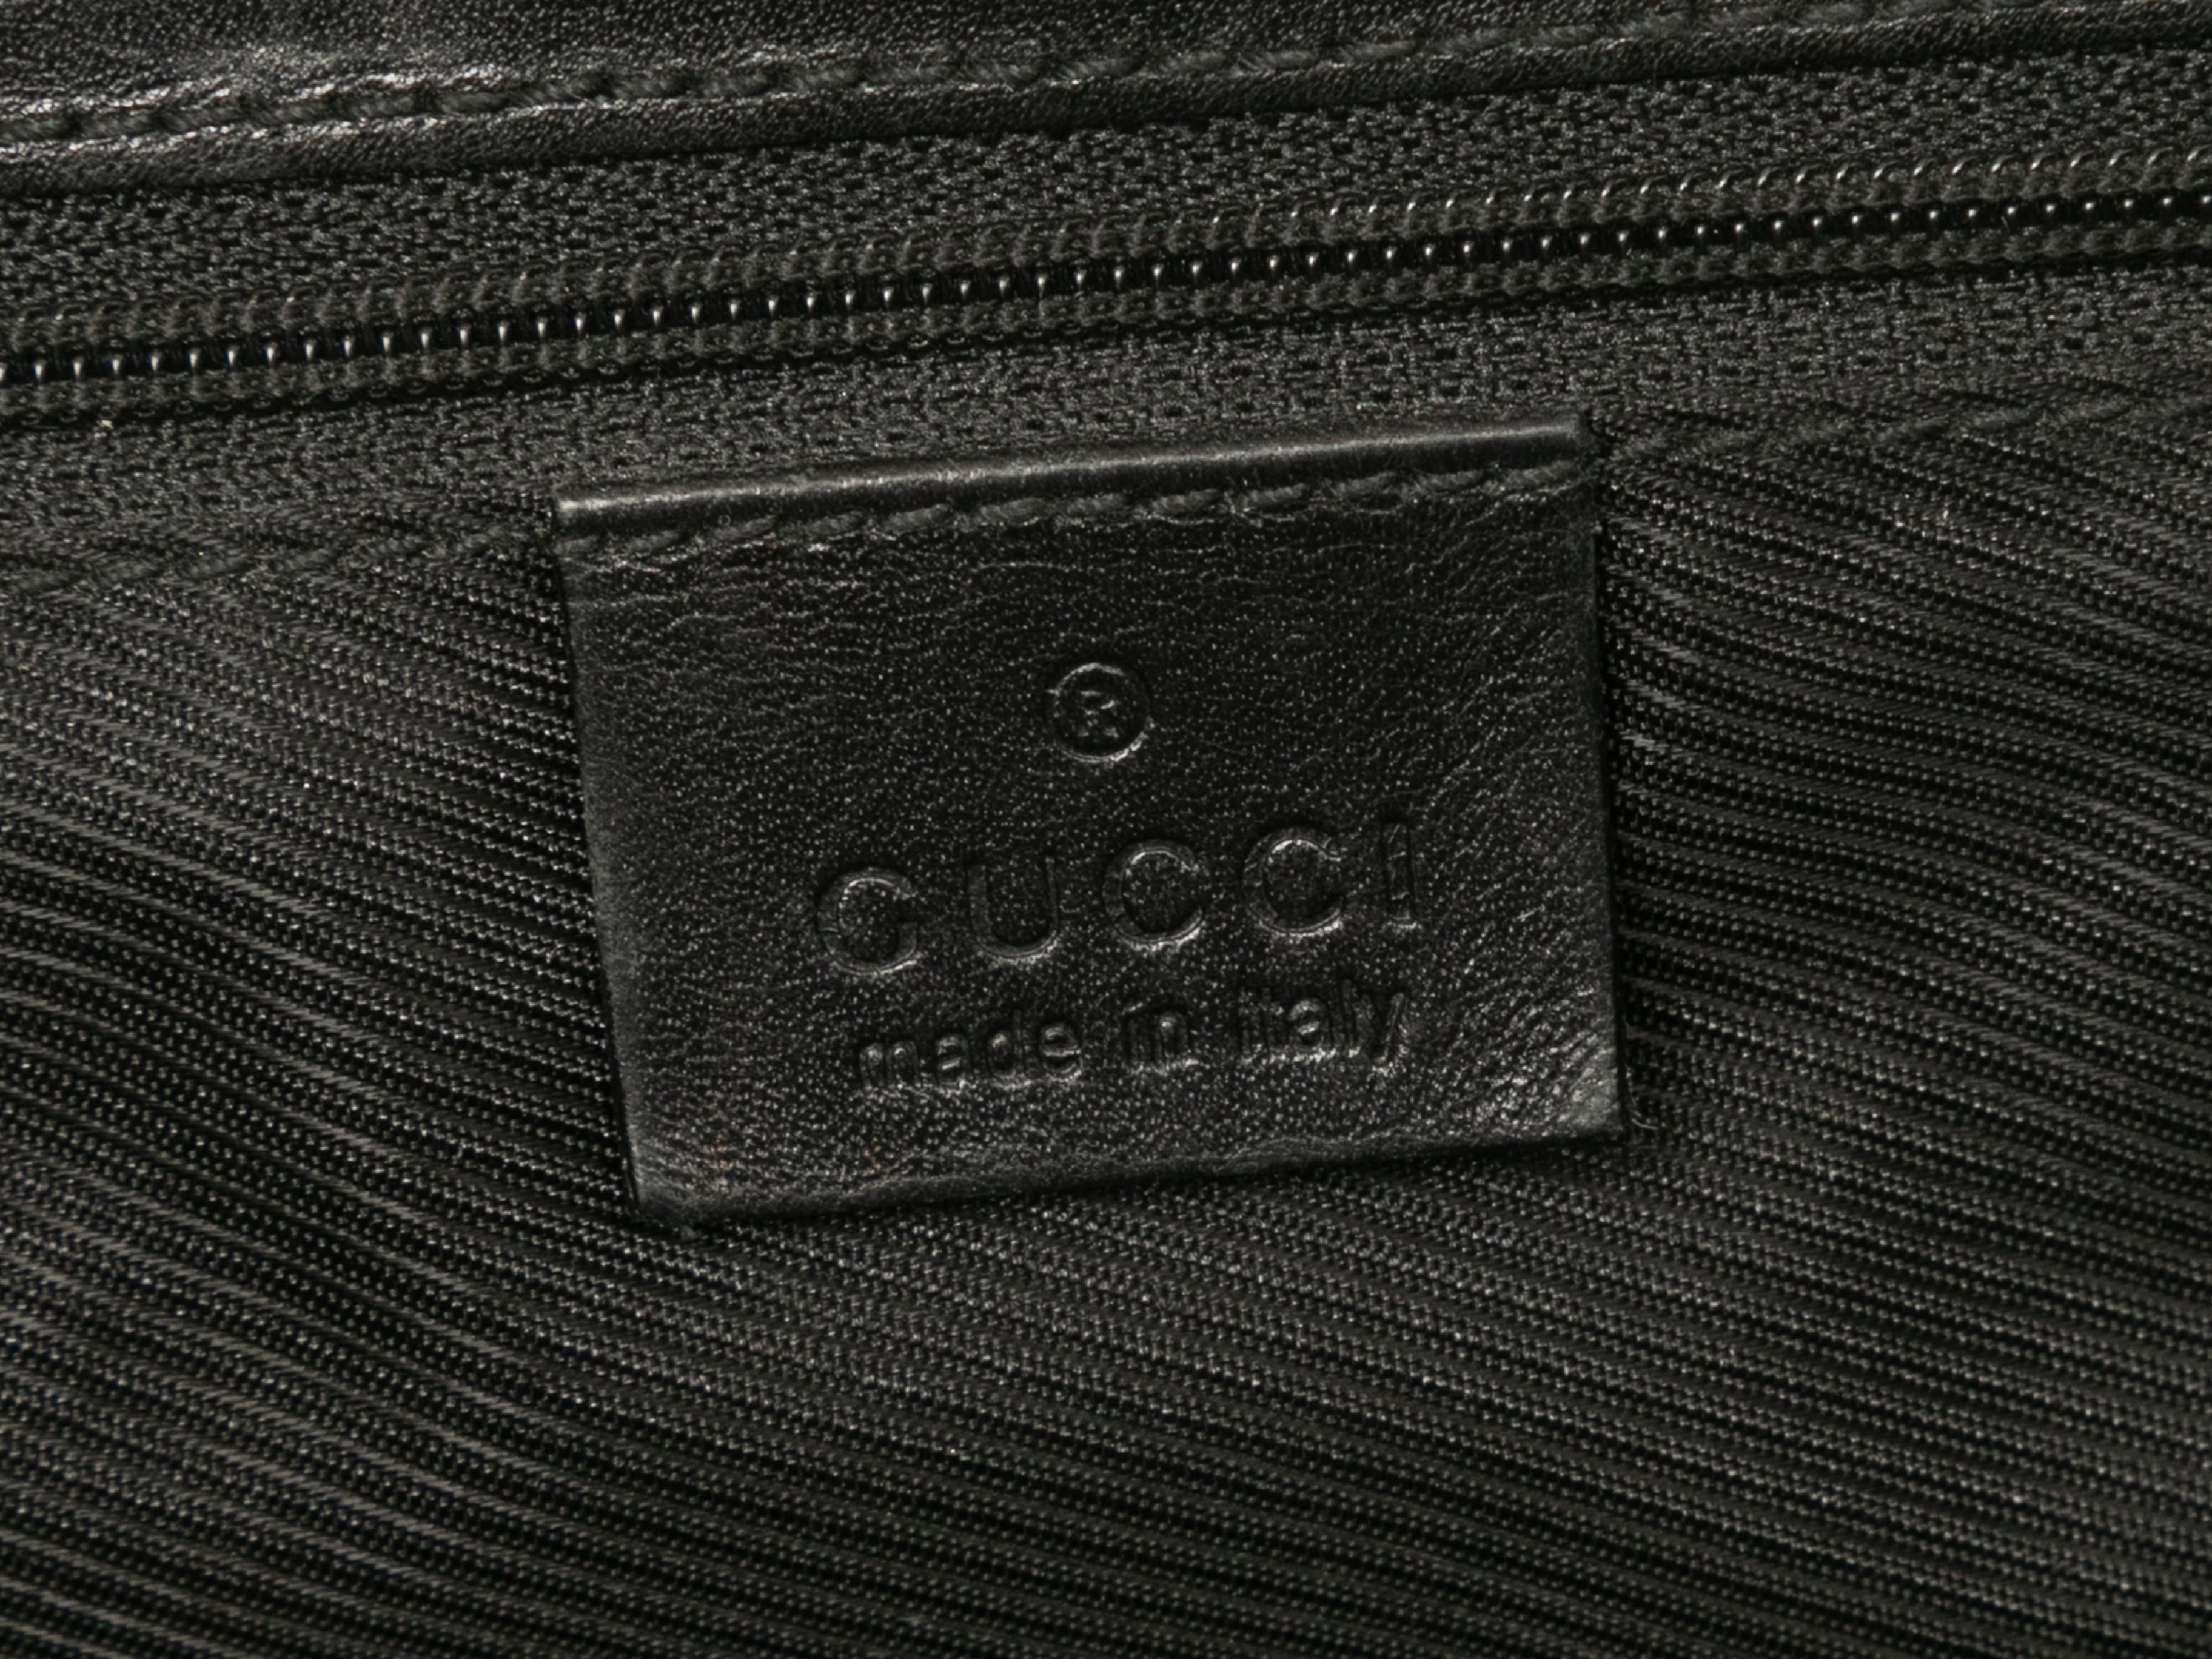 Vintage Black Gucci Monogram Canvas & Leather Tote Bag – Designer Revival